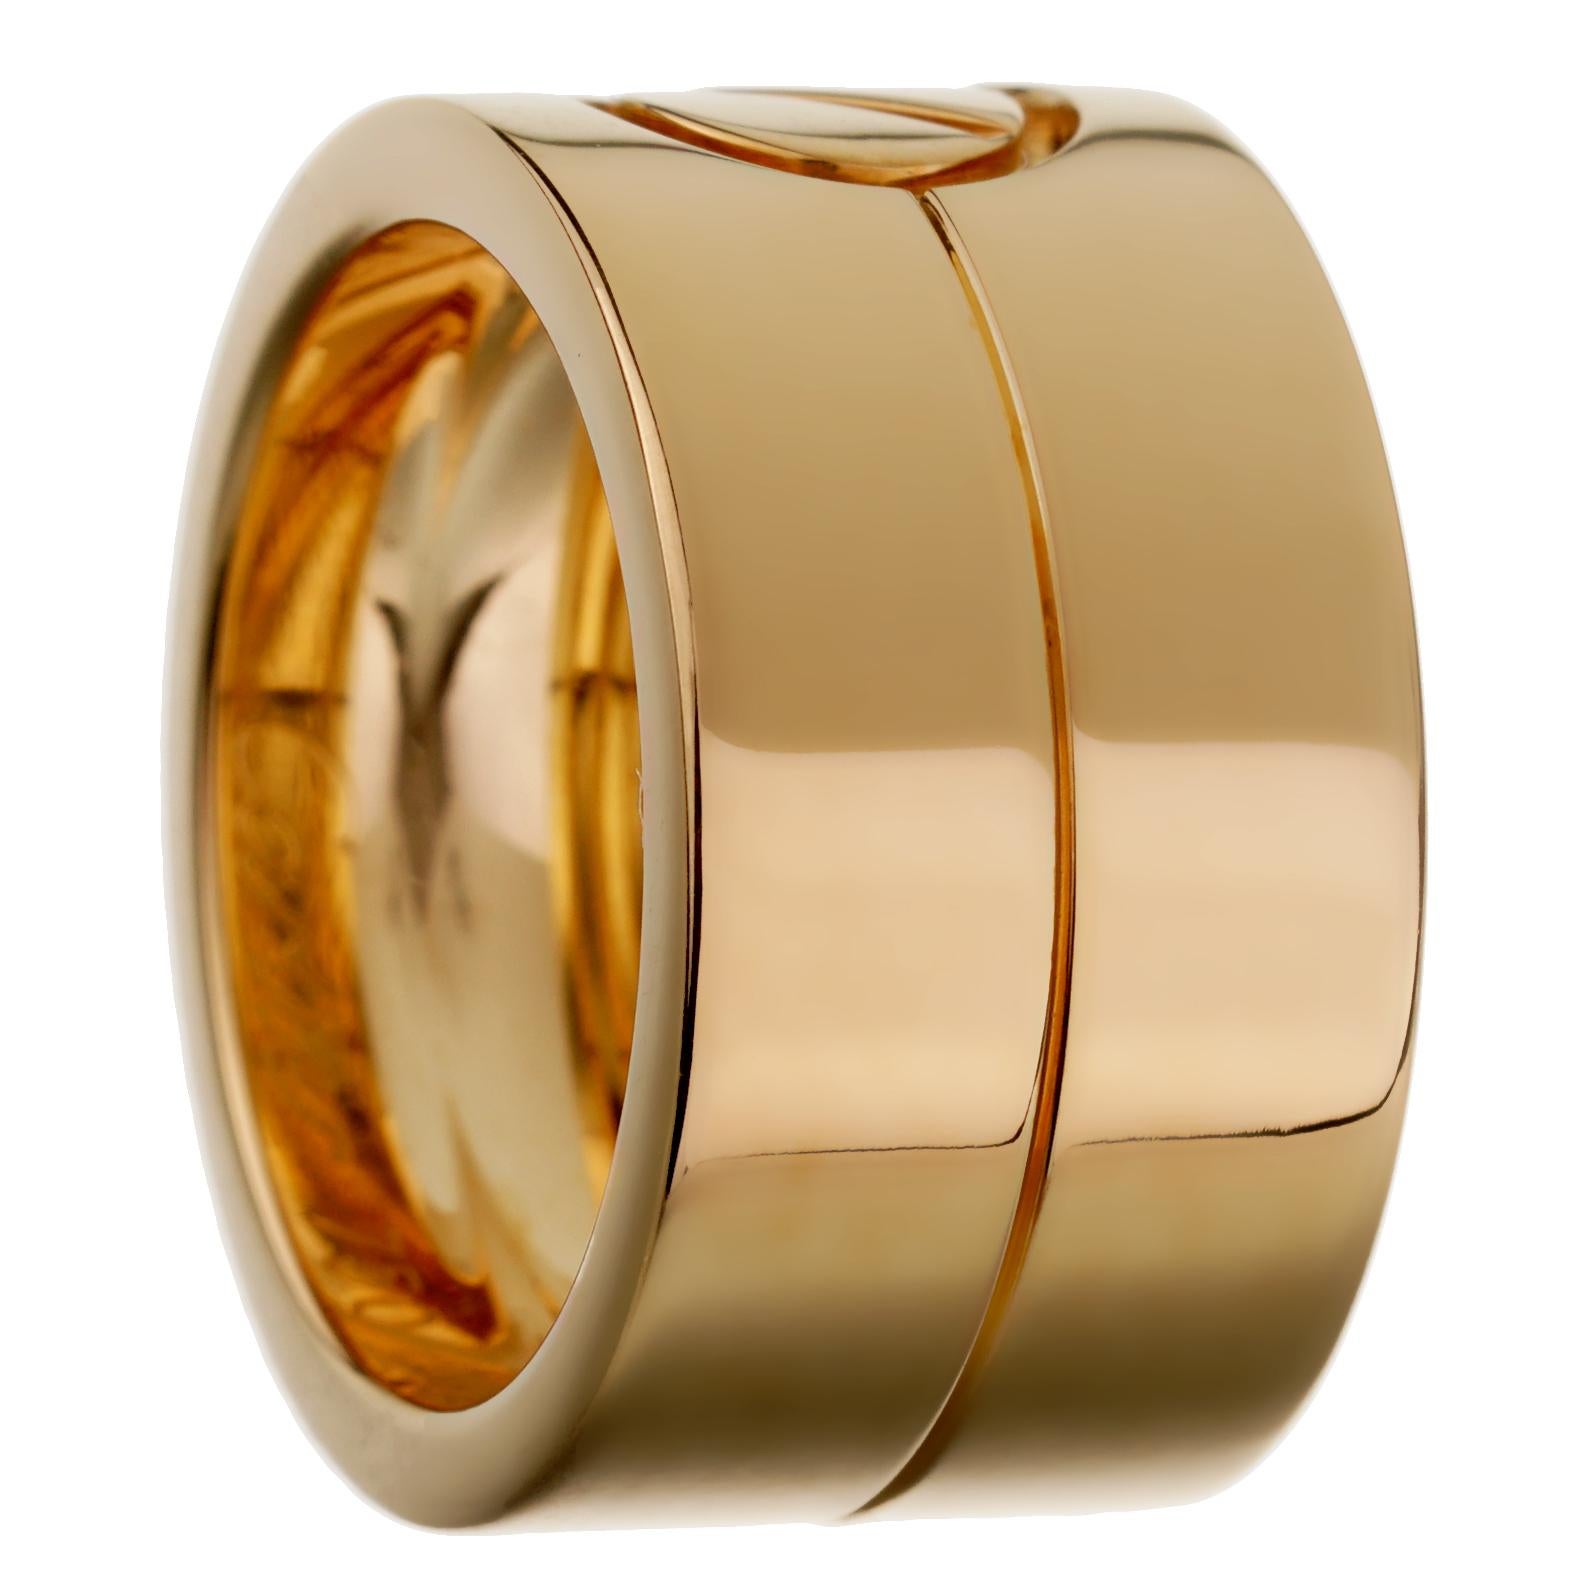 Eine circa 1990er Jahre Gelbgold Cartier Liebe Ring zeigt das ikonische Motiv in 18k Gelbgold, der Ring misst eine Größe 5.